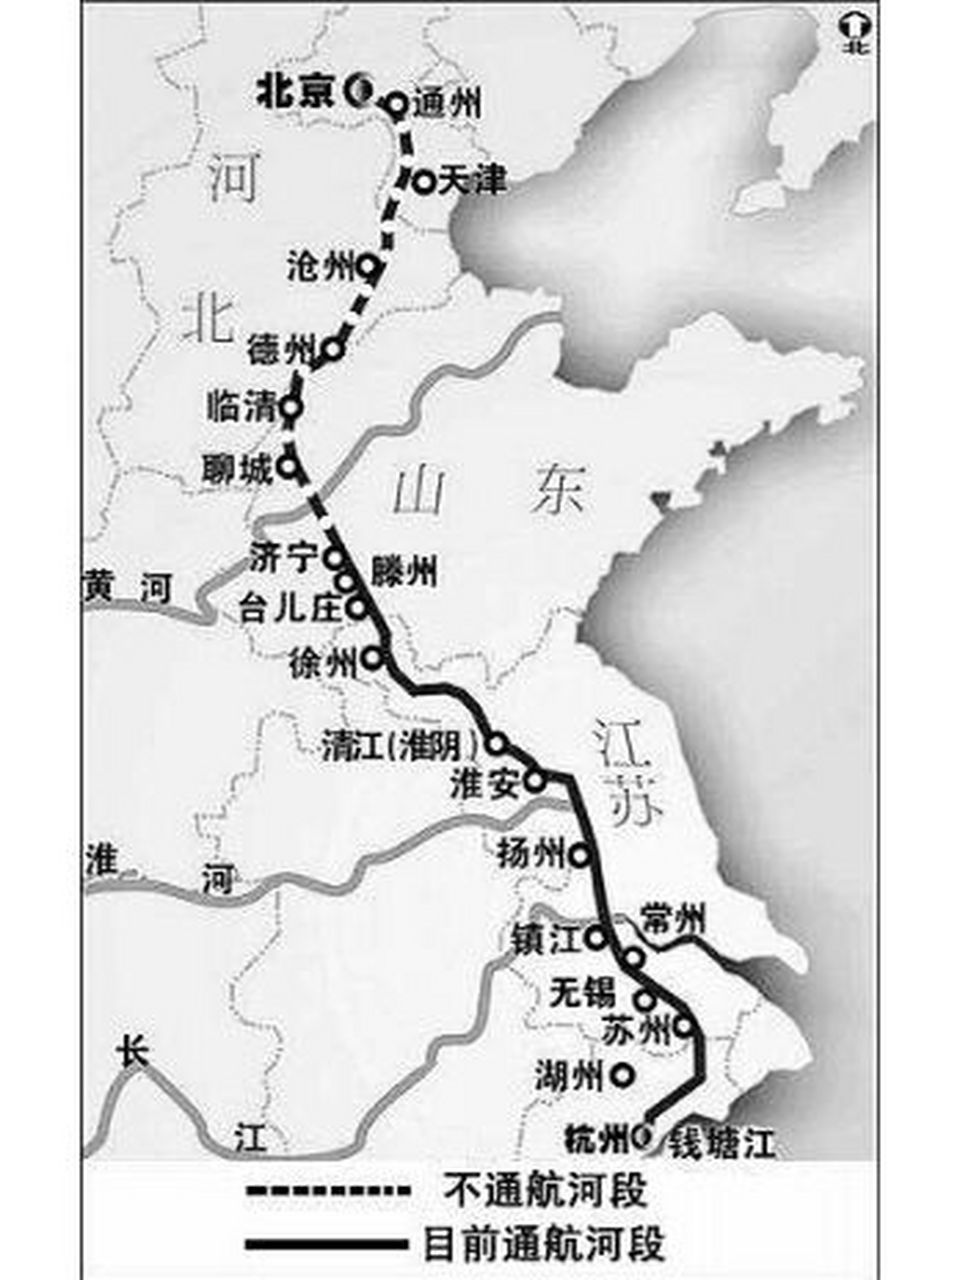 京杭运河地图路线全图图片